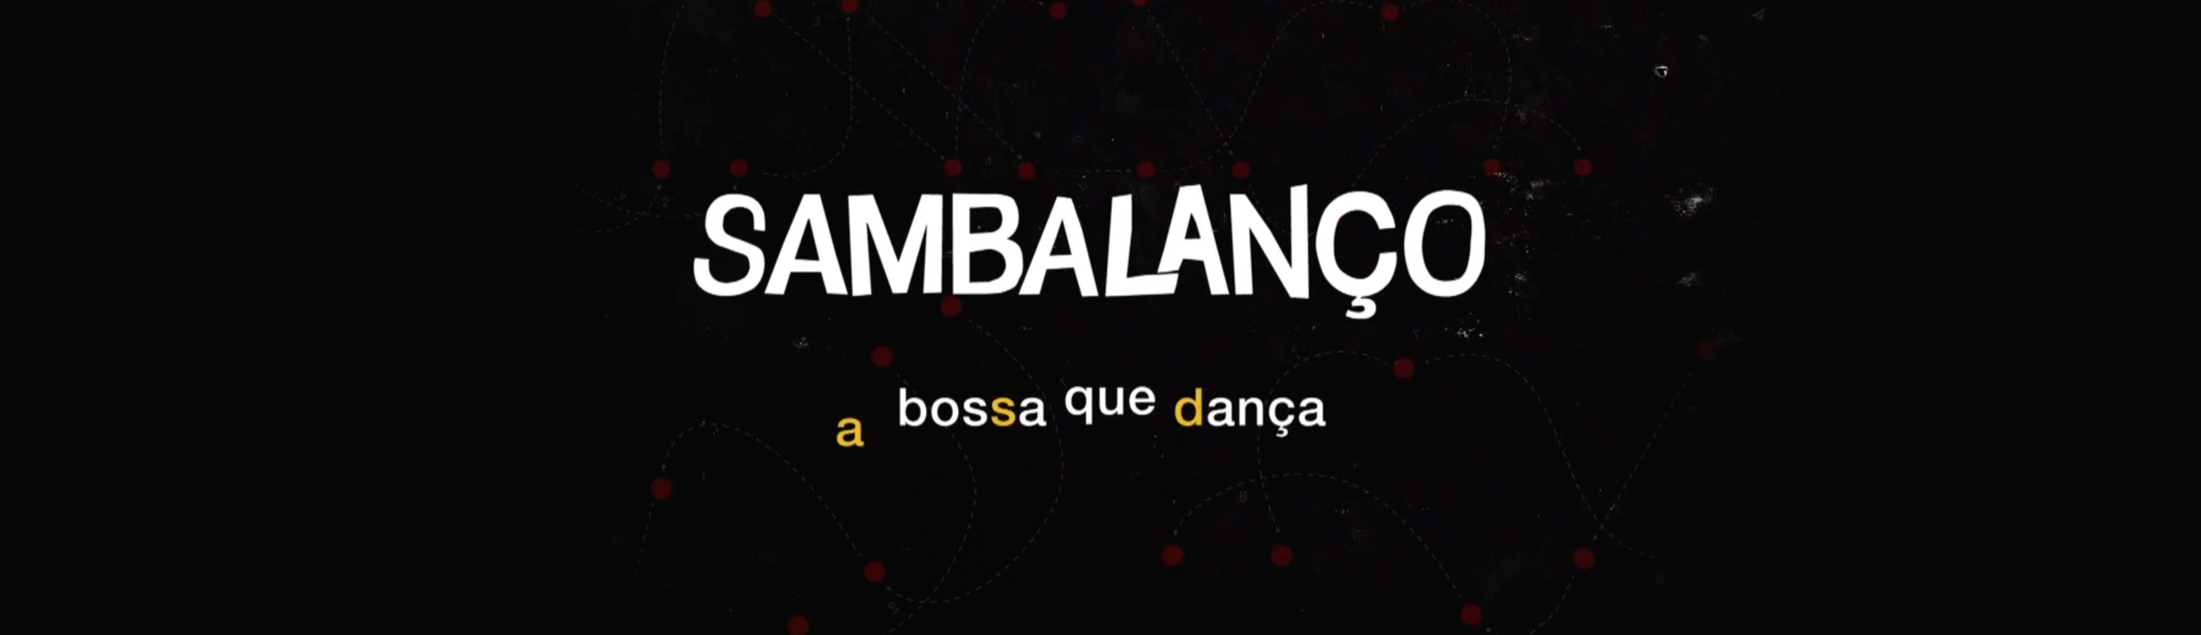 Documentário Sambalanço, a Bossa Que Dança